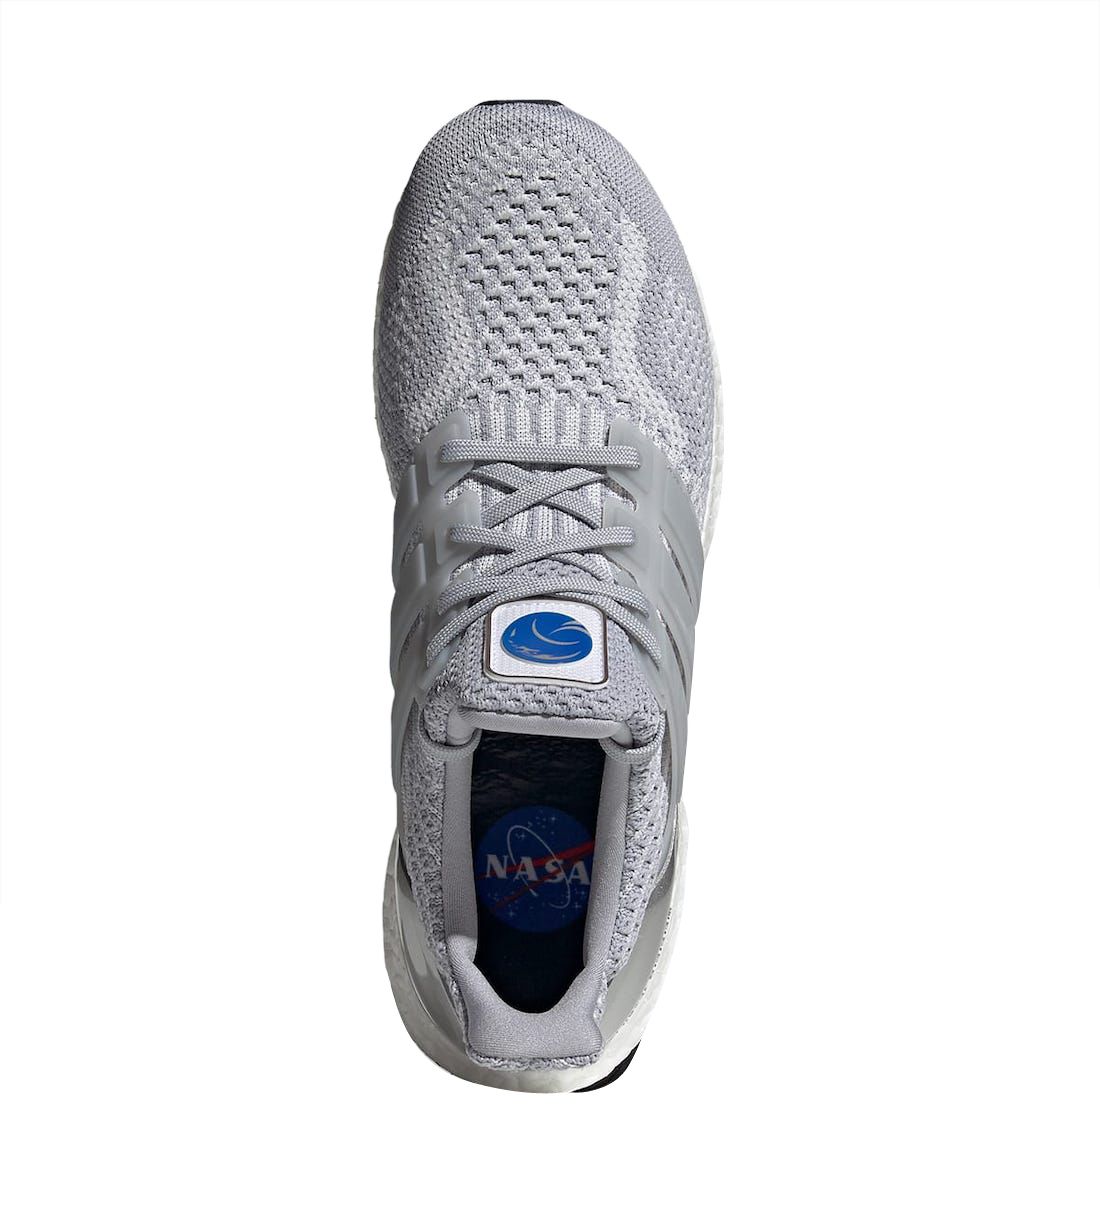 NASA x adidas Ultra Boost DNA Halo Silver FX7972